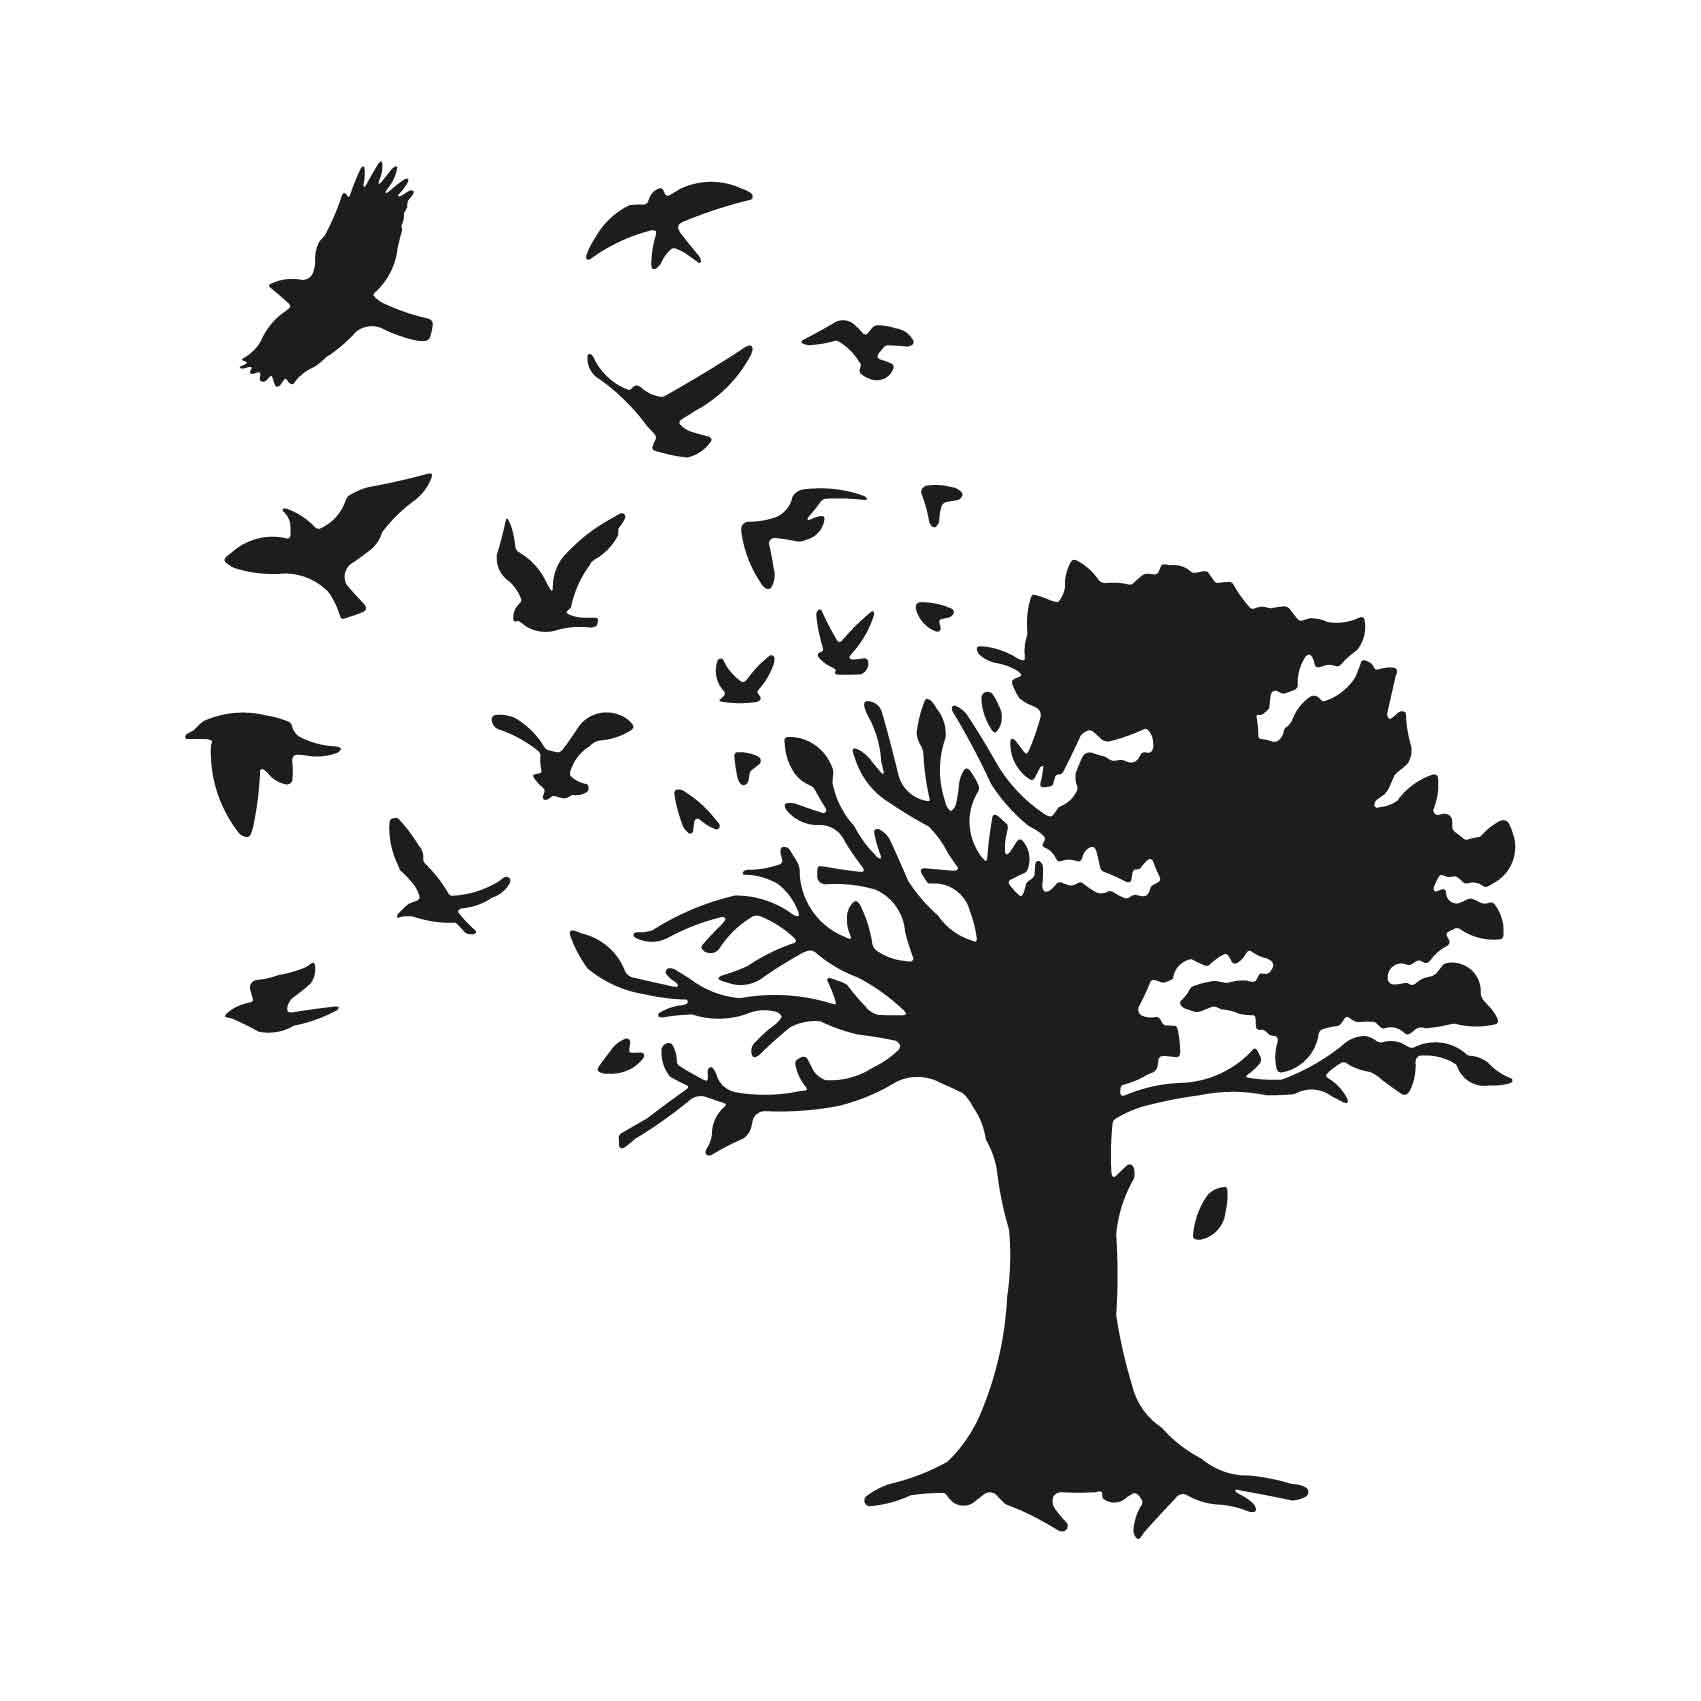 stickers-arbre-oiseaux-ref42arbre-autocollant-muraux-sticker-geant-arbre-deco-branche-noir-rose-gris-vert-blanc-chambre-salon-(2)